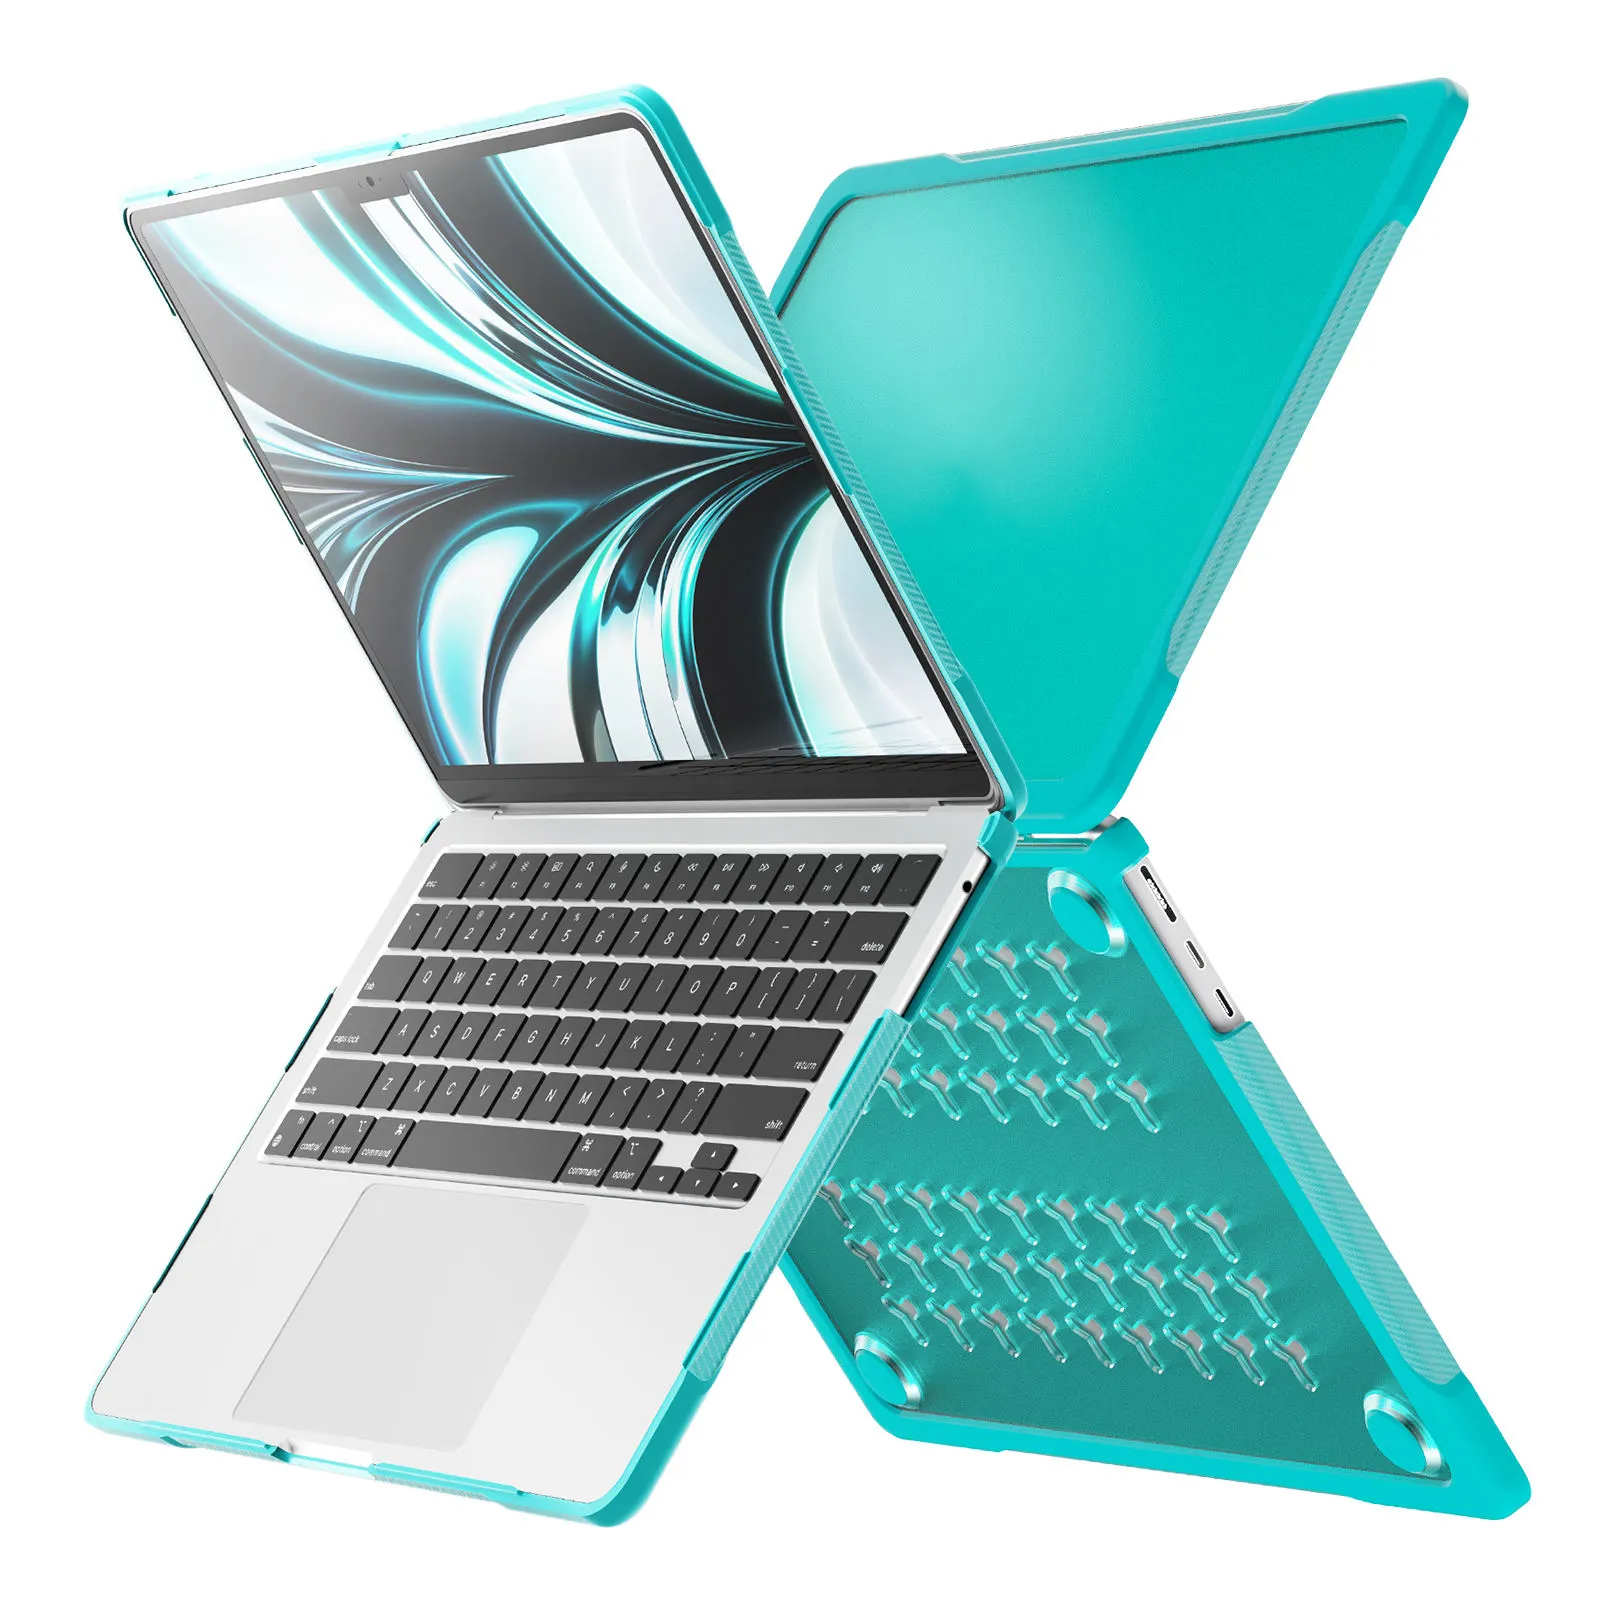 Macbook Air13 A2337 M1 A2179, A1932 용 최신 개인 라벨 완전 보호 슬림 충격 방지 하이브리드 하드 매트 PC 케이스